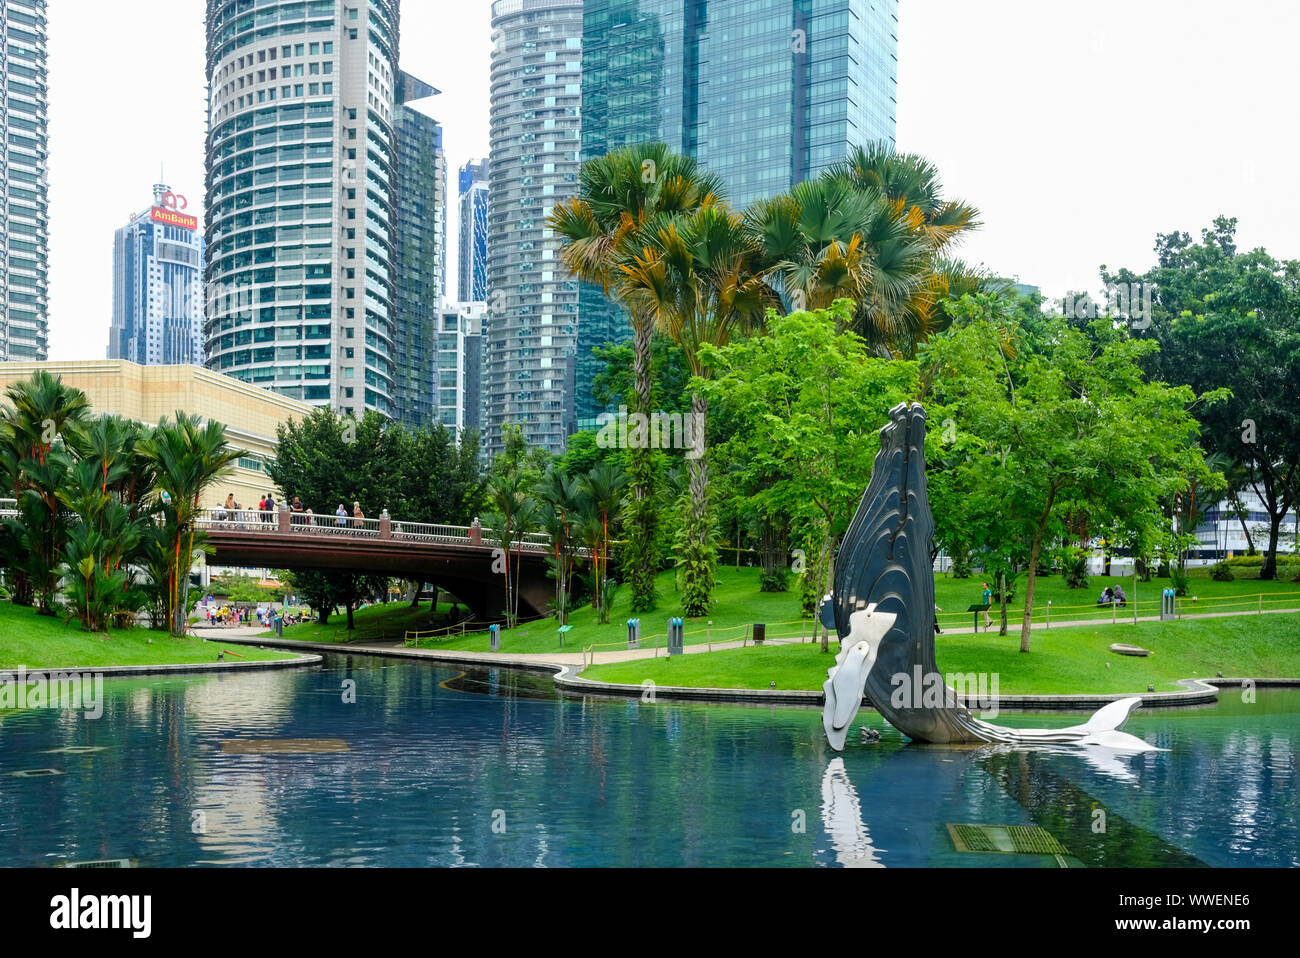 La sculpture des baleines dans le parc KLCC, Kuala Lumpur, Malaisie Banque D'Images